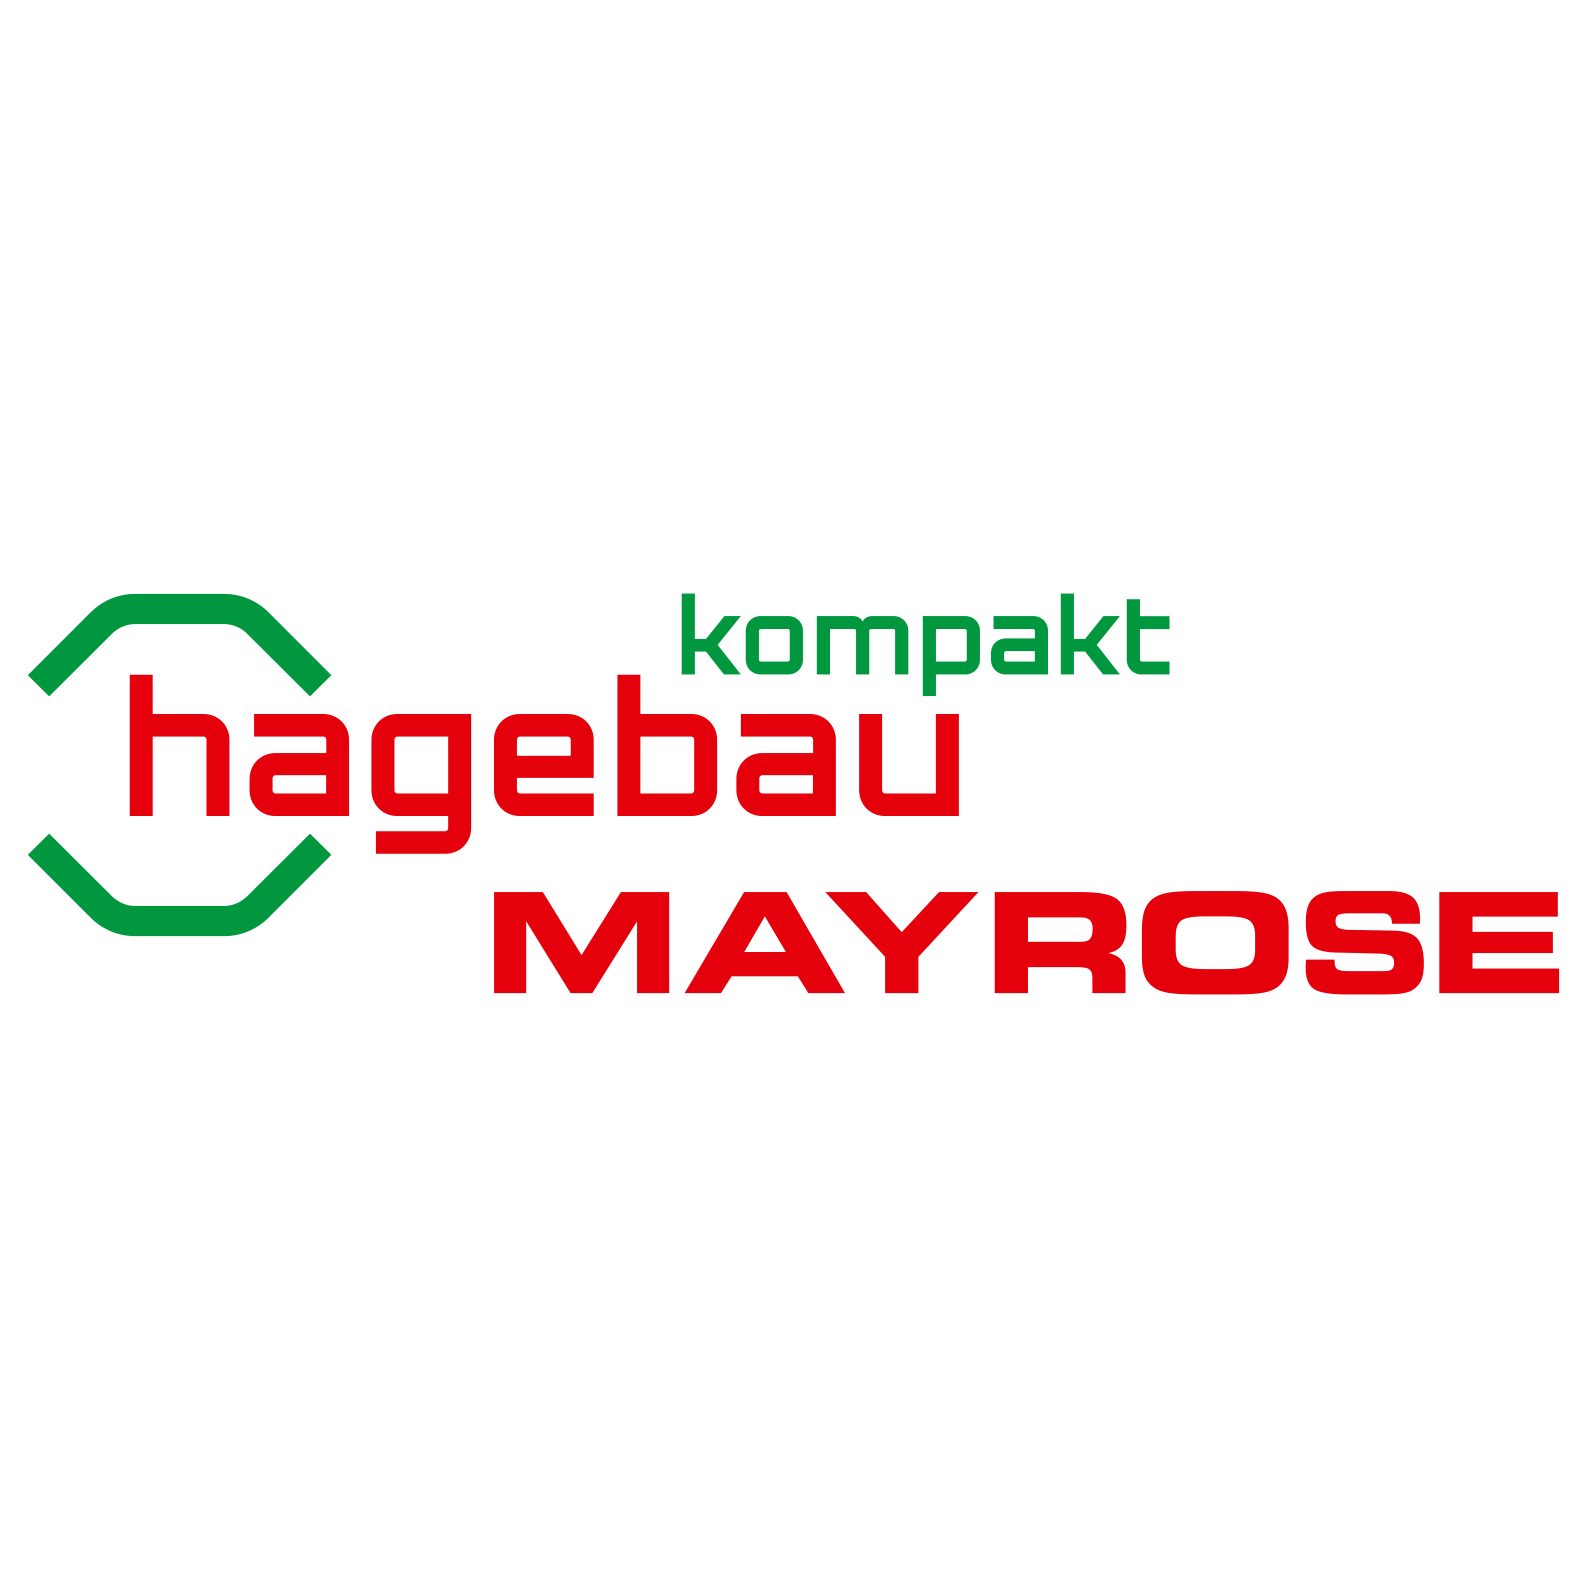 hagebau kompakt / Mayrose-Rheine GmbH & Co. KG  